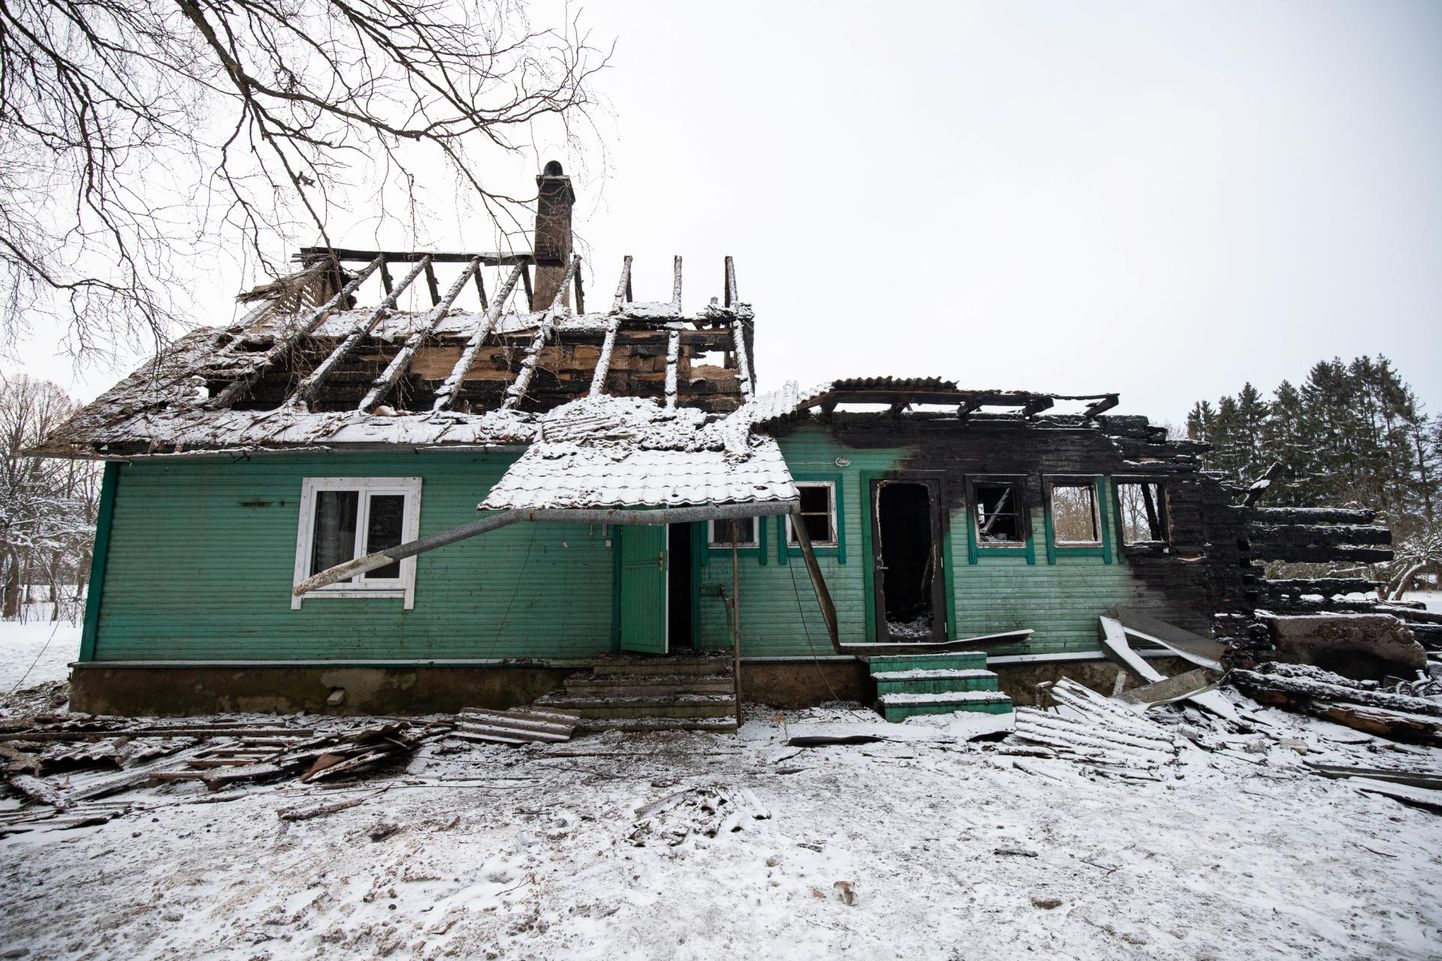 2. veebruar 2021. Garaažis tehtud tööde käigus süttis bensiinipaak, mille tagajärjel põles maja peaaegu üleni maha. Õnneks pääses pererahvas eluga.